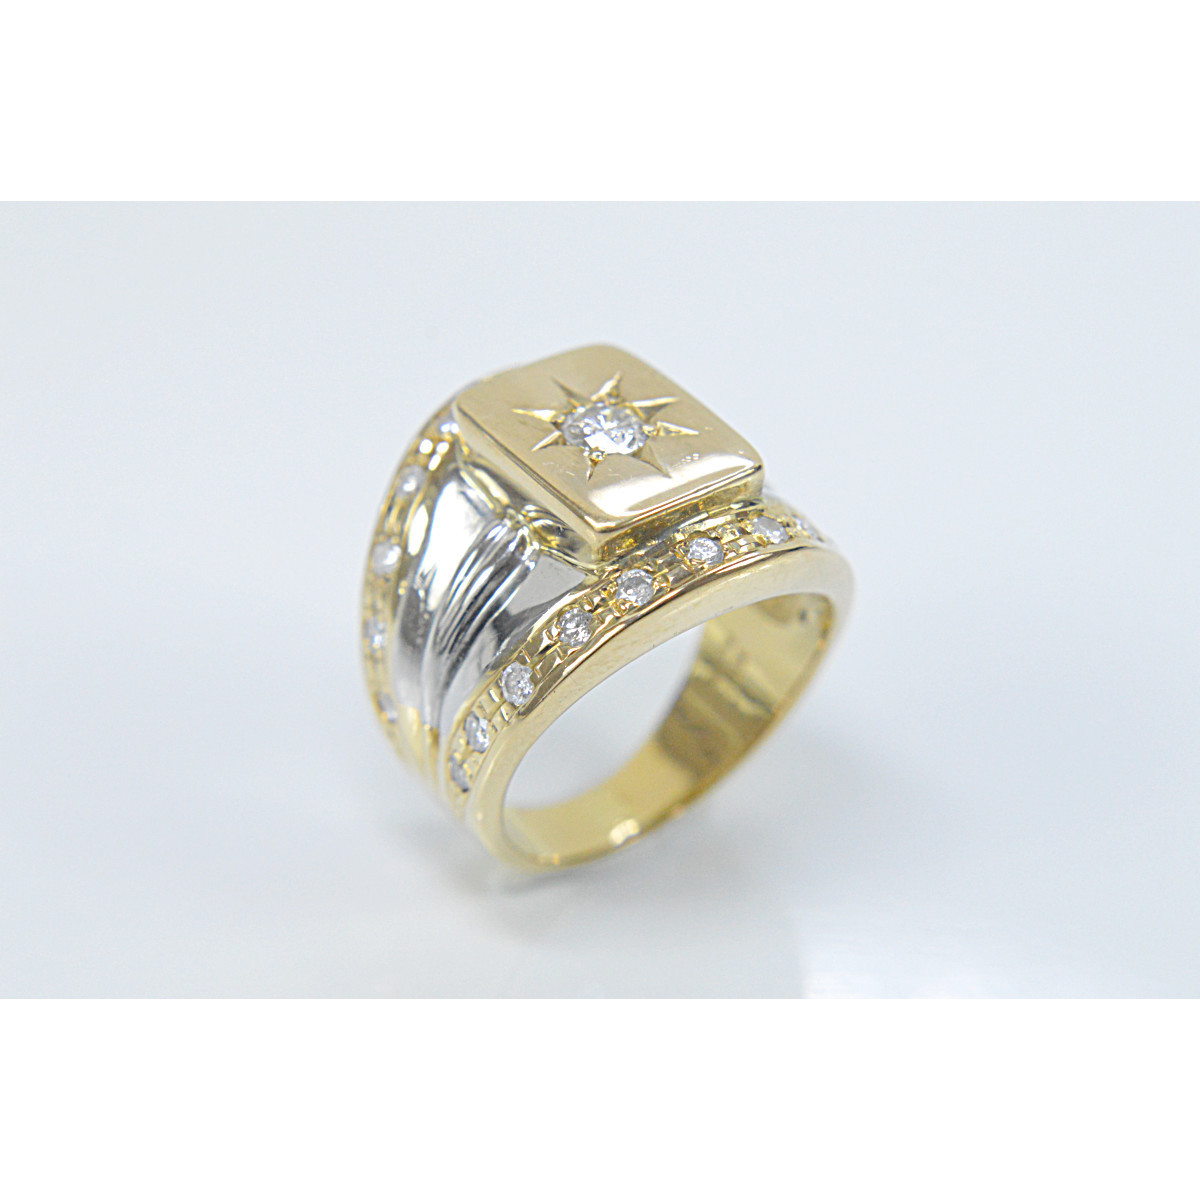 750YG/PT900 メンズ ダイヤモンド デザイン ジュエリー ピンキーリング 指輪 11号 0.7ct 10.9g